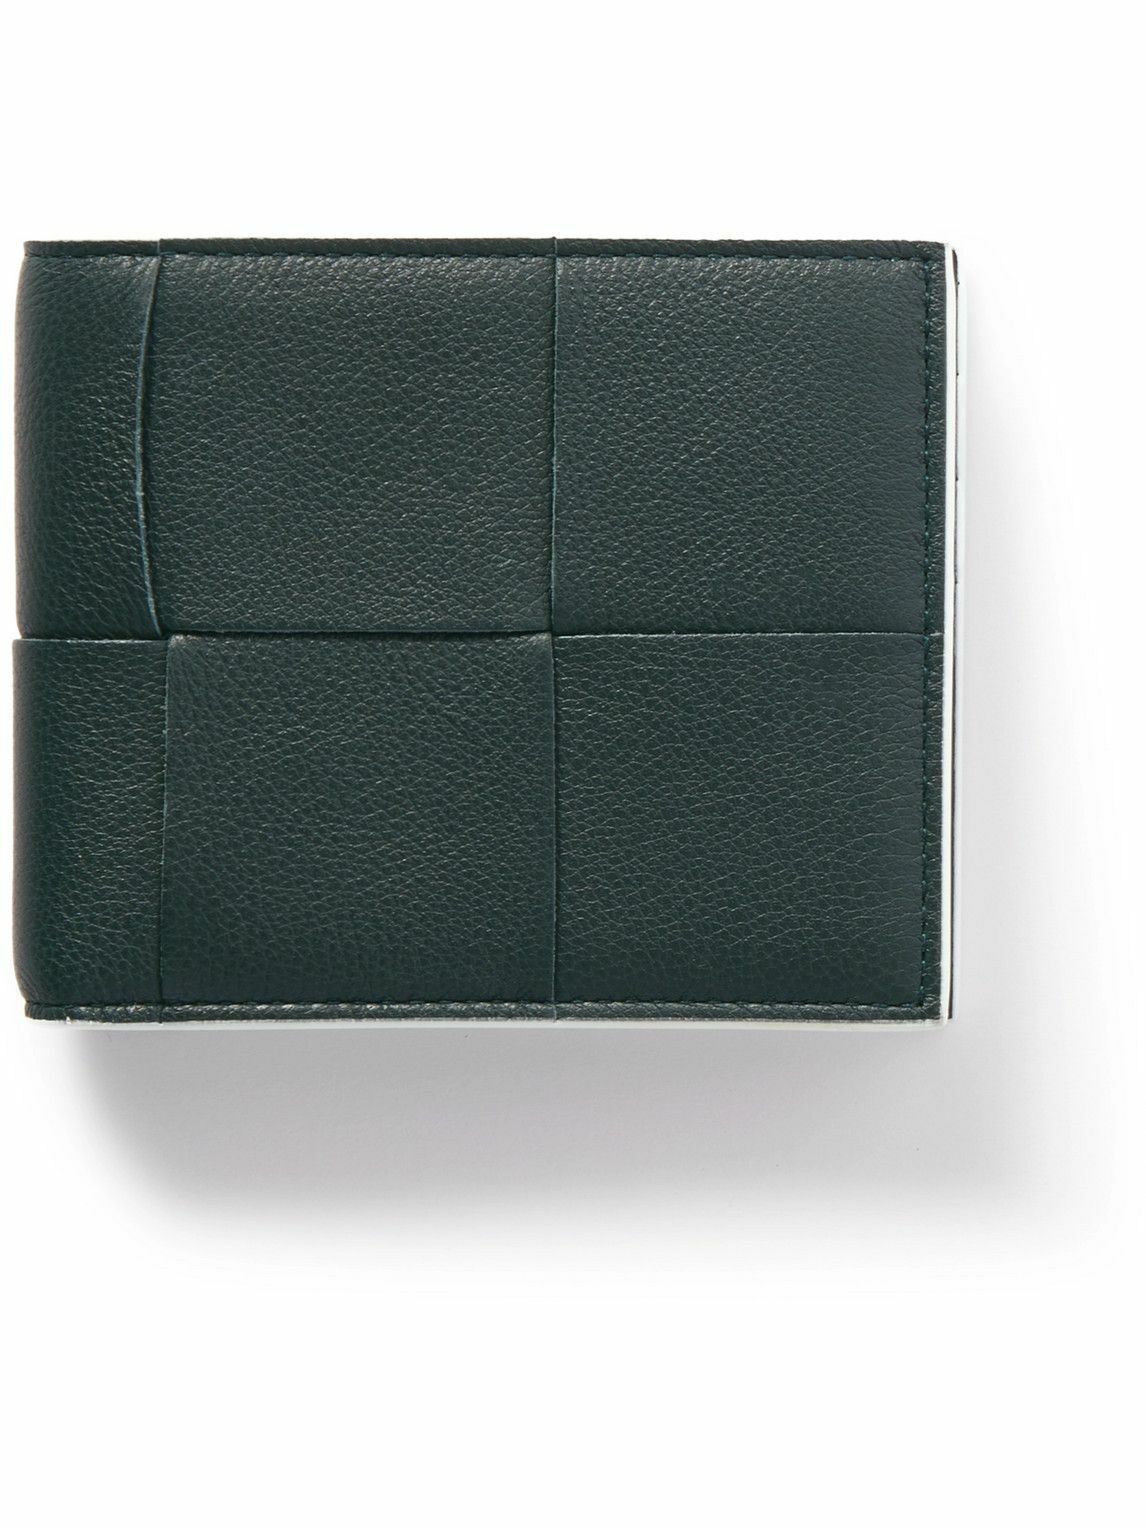 Bottega Veneta - Intrecciato Full-Grain Leather Billfold Wallet Bottega ...